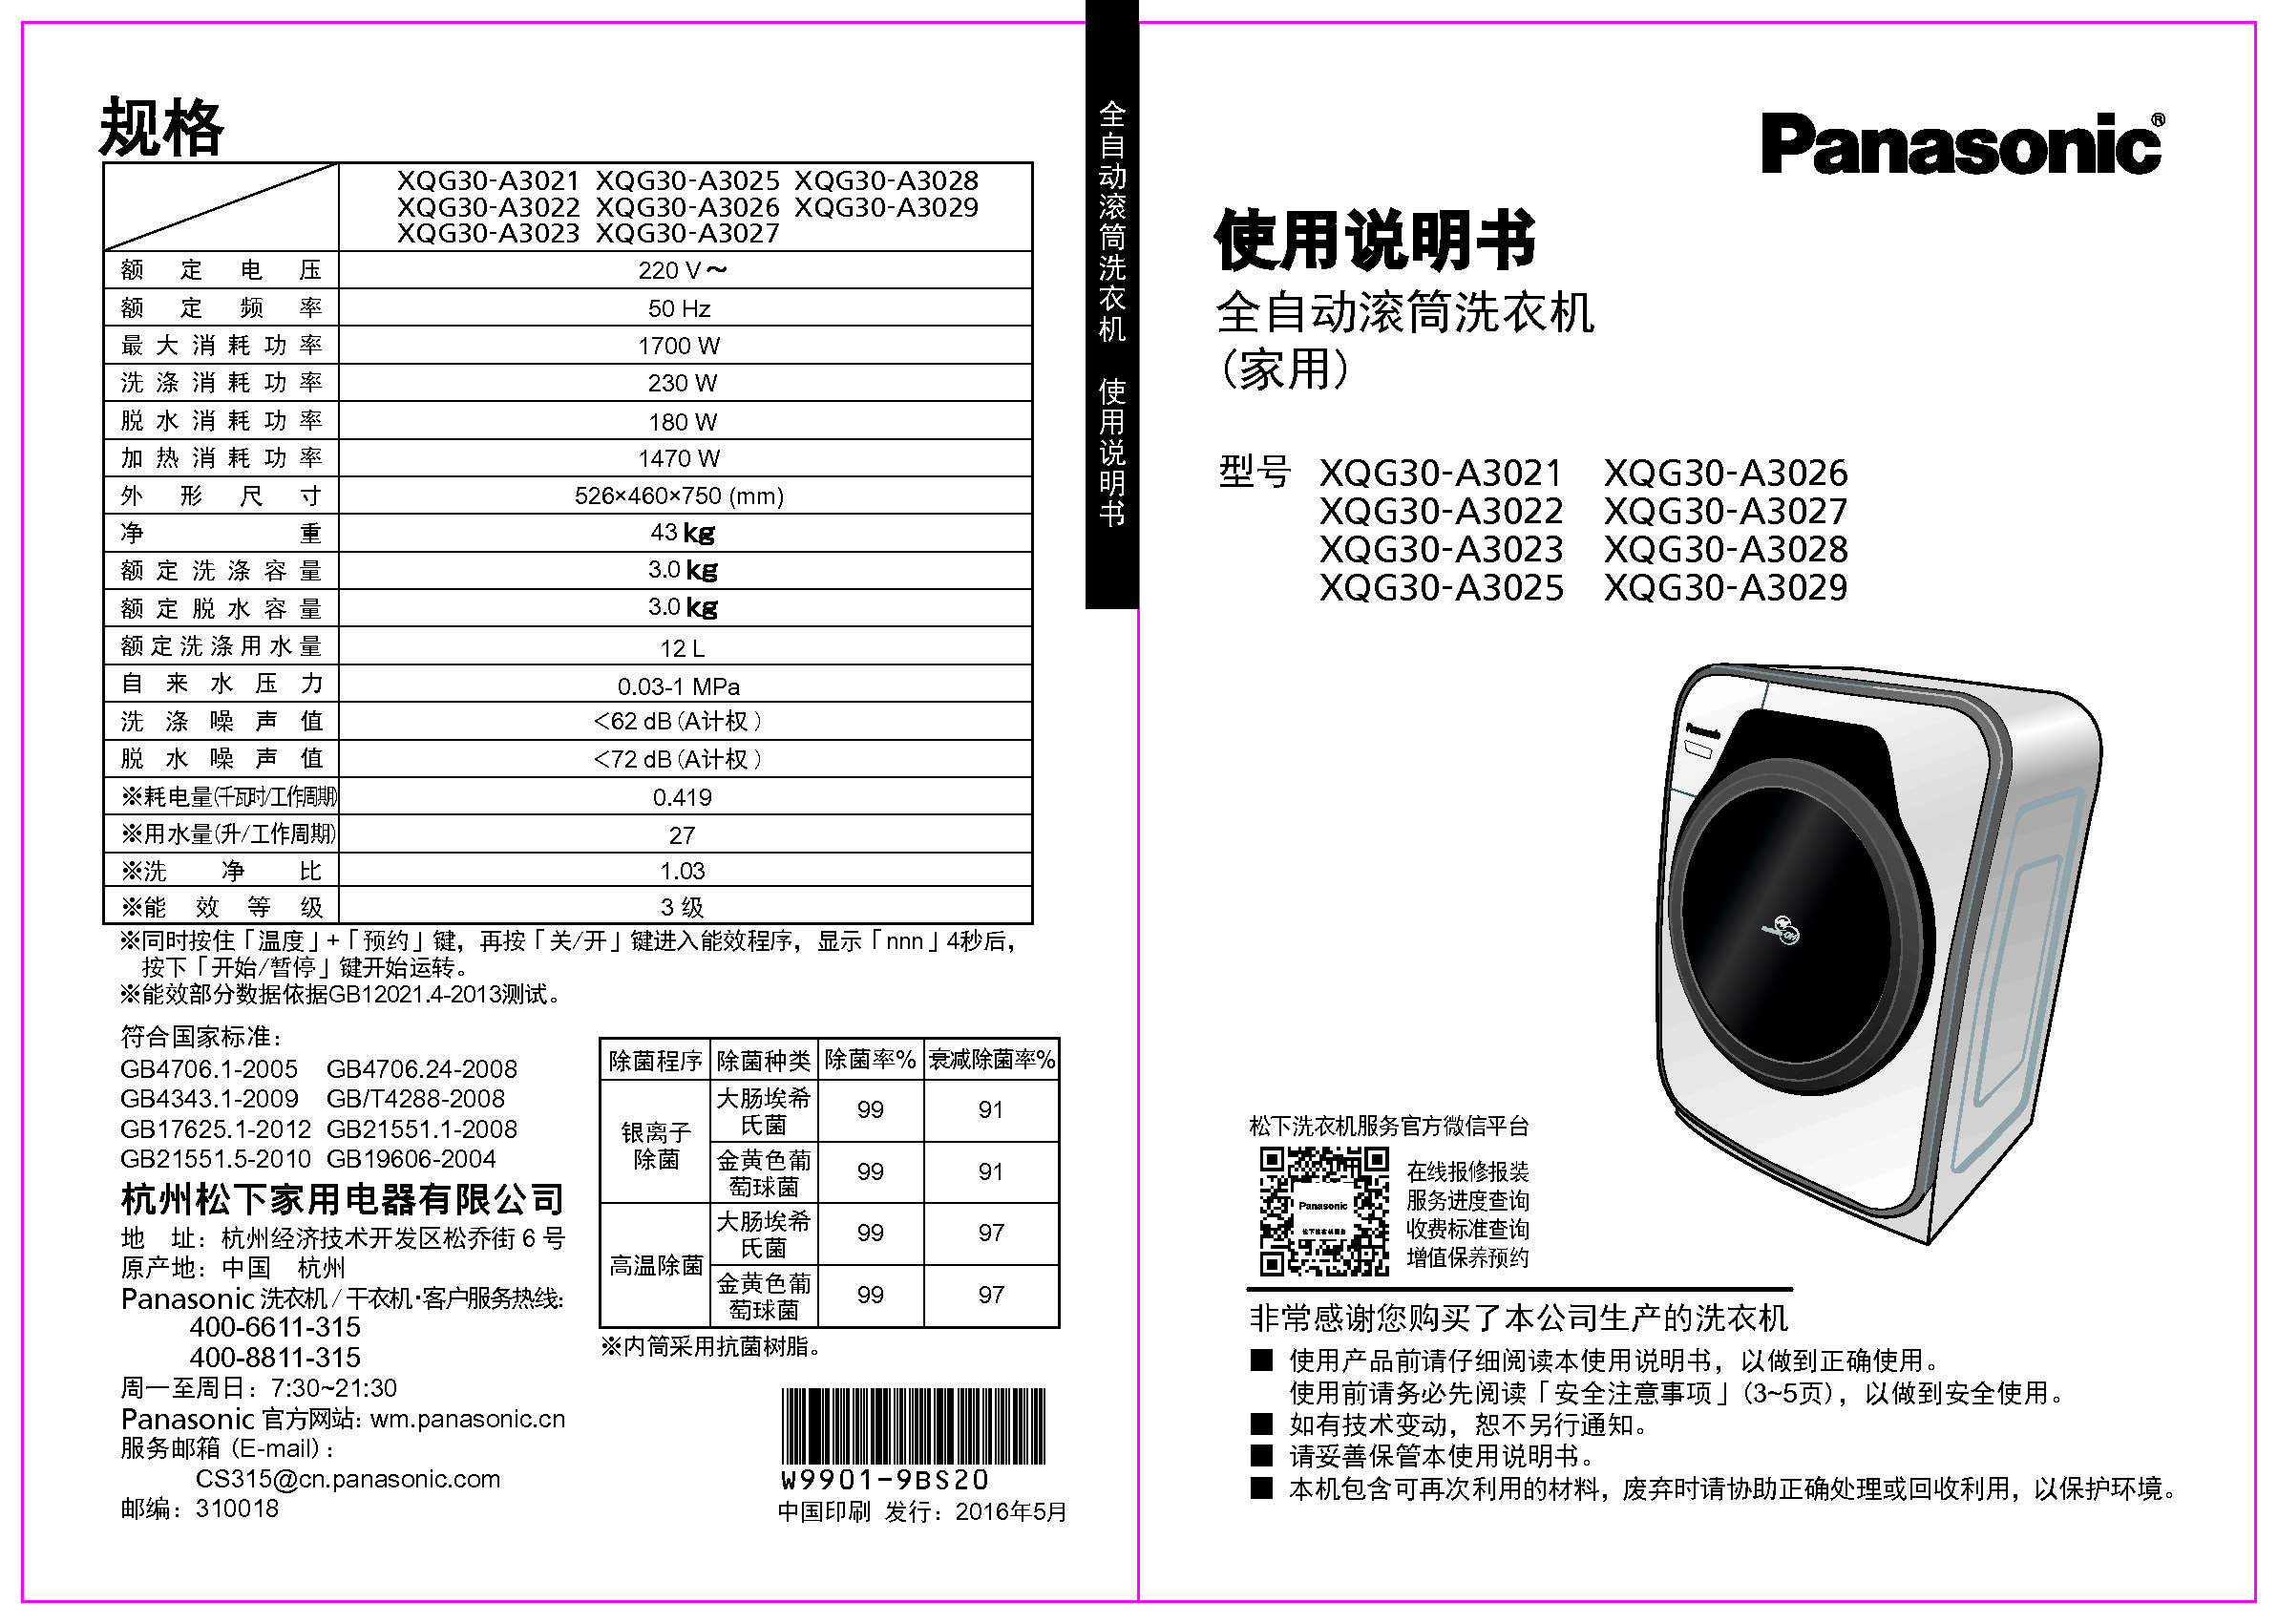 松下 Panasonic XQG30-A3021 使用说明书 封面